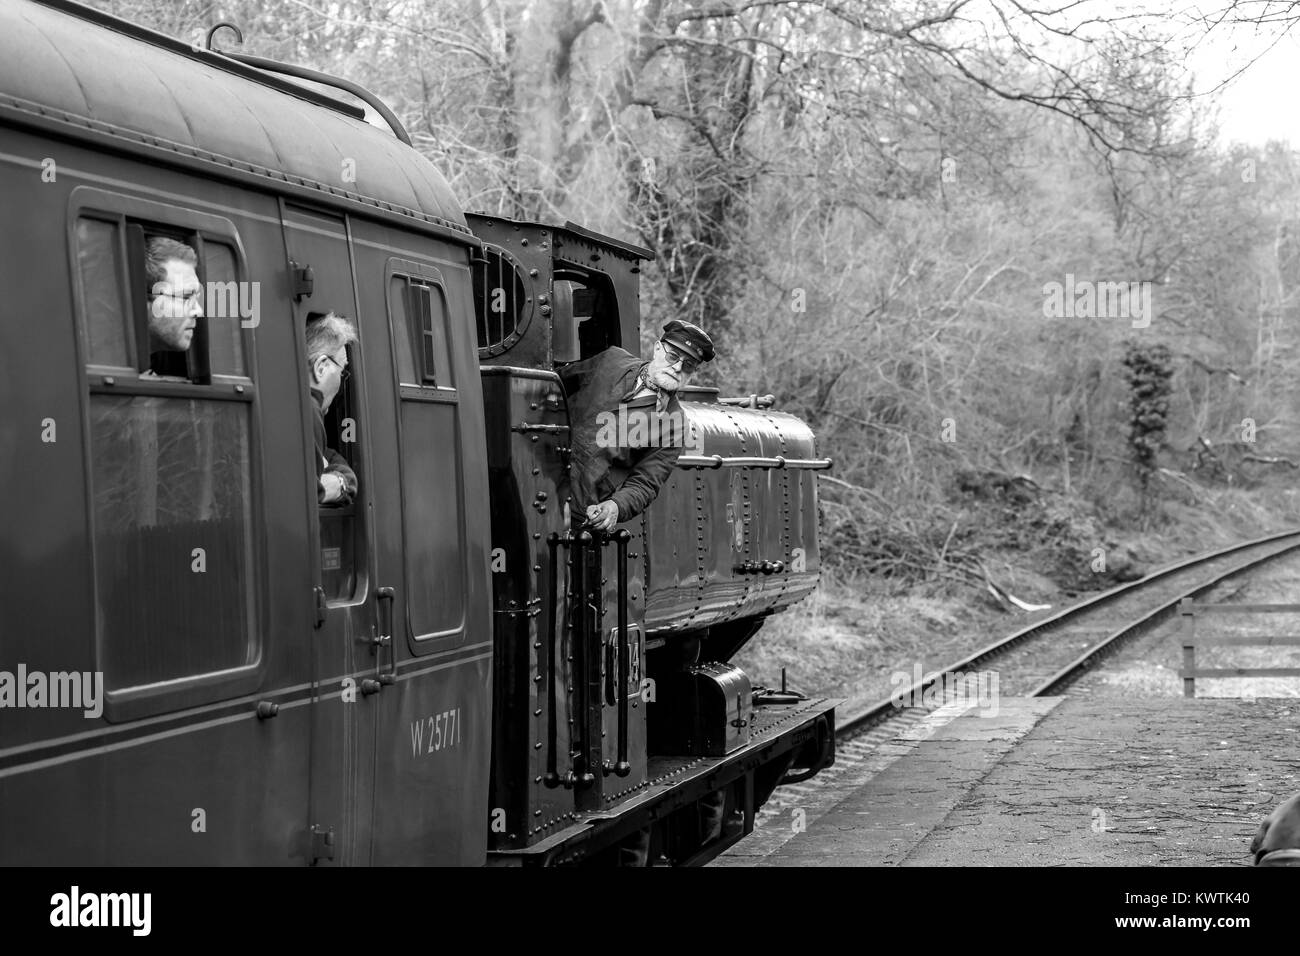 Photographie noir et blanc du pilote du moteur incliné vers l'extérieur de la cabine de vintage UK train à vapeur, en action sur la Severn Valley Railway heritage line. Banque D'Images